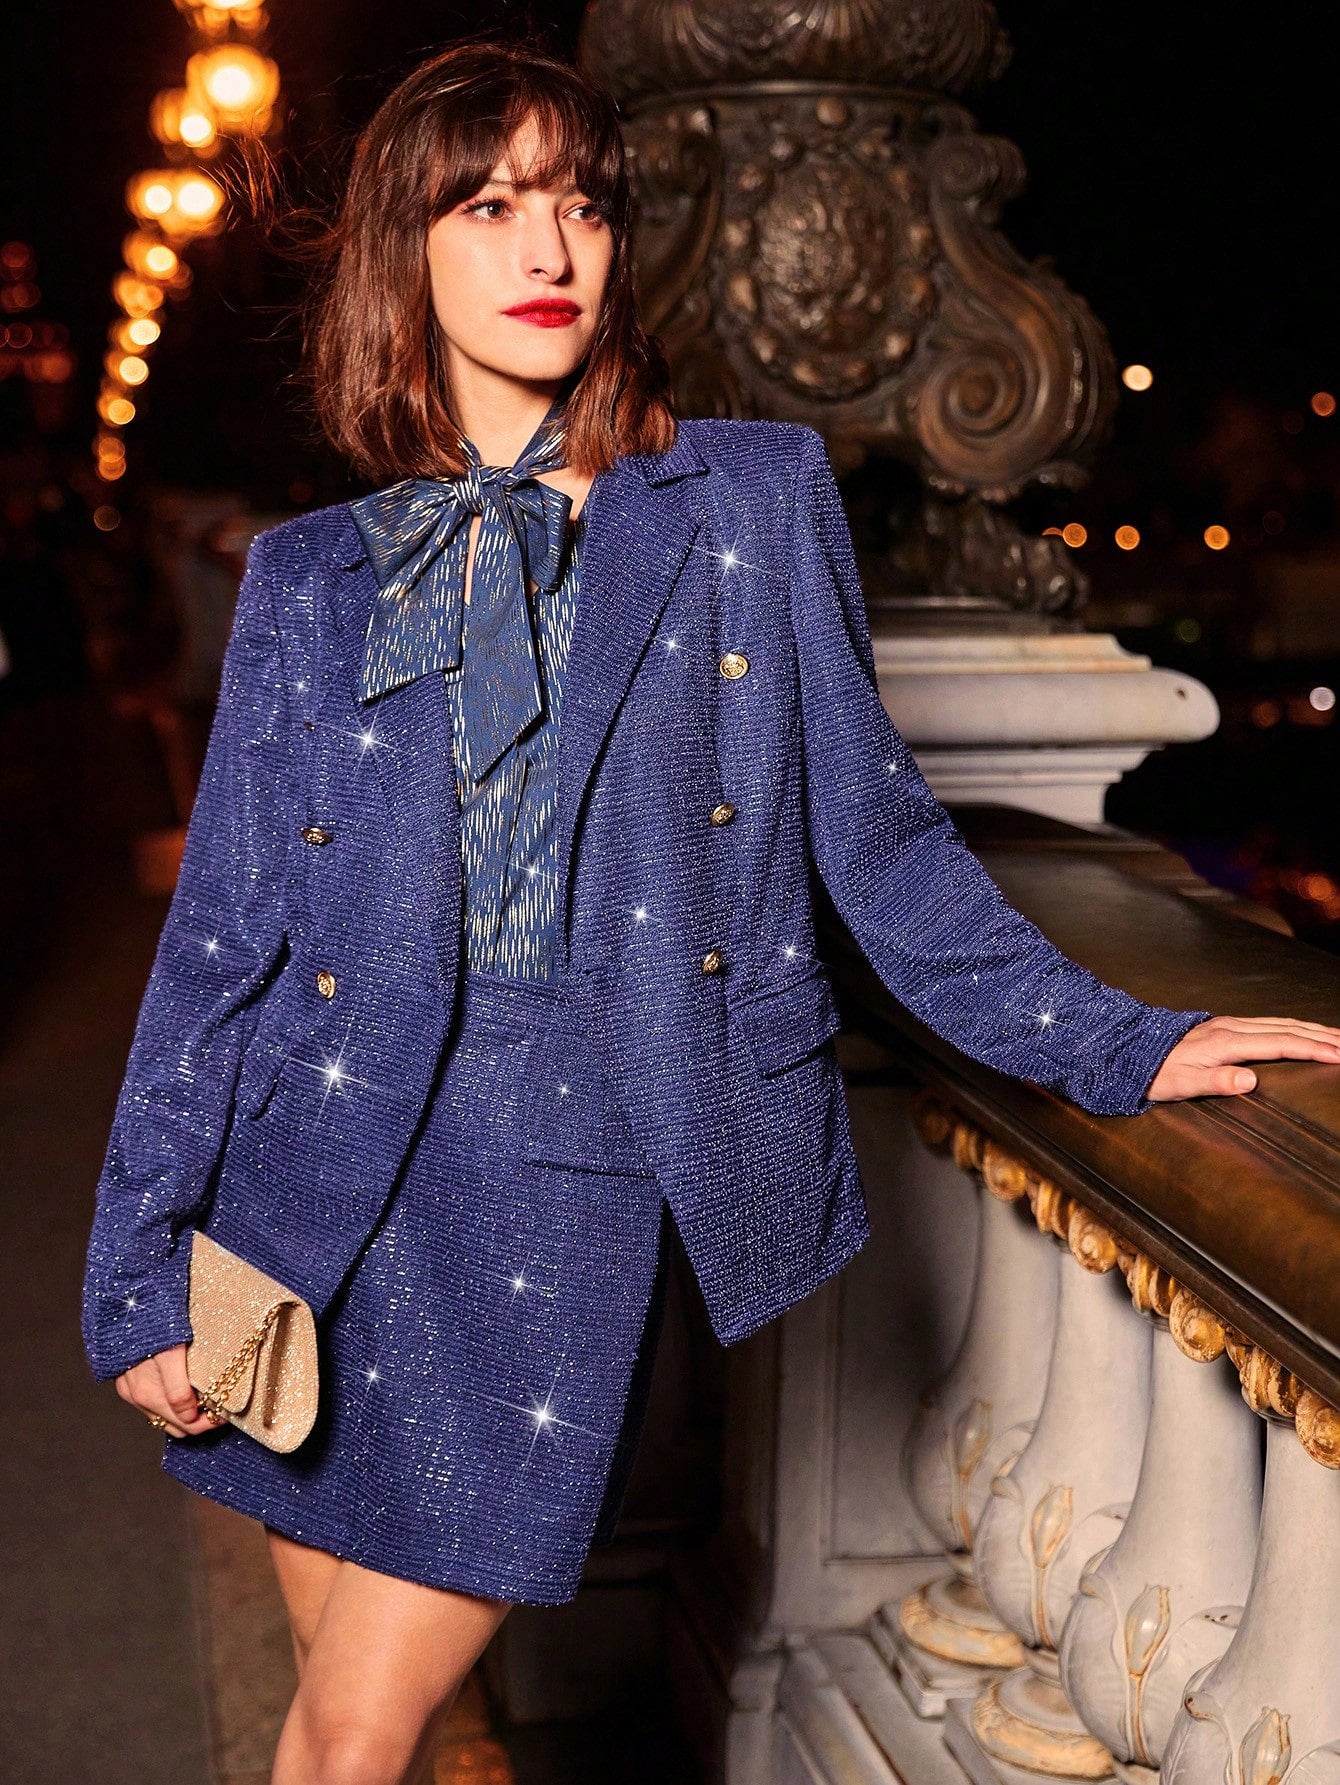 model in paris wearing a Blue glitter jacket